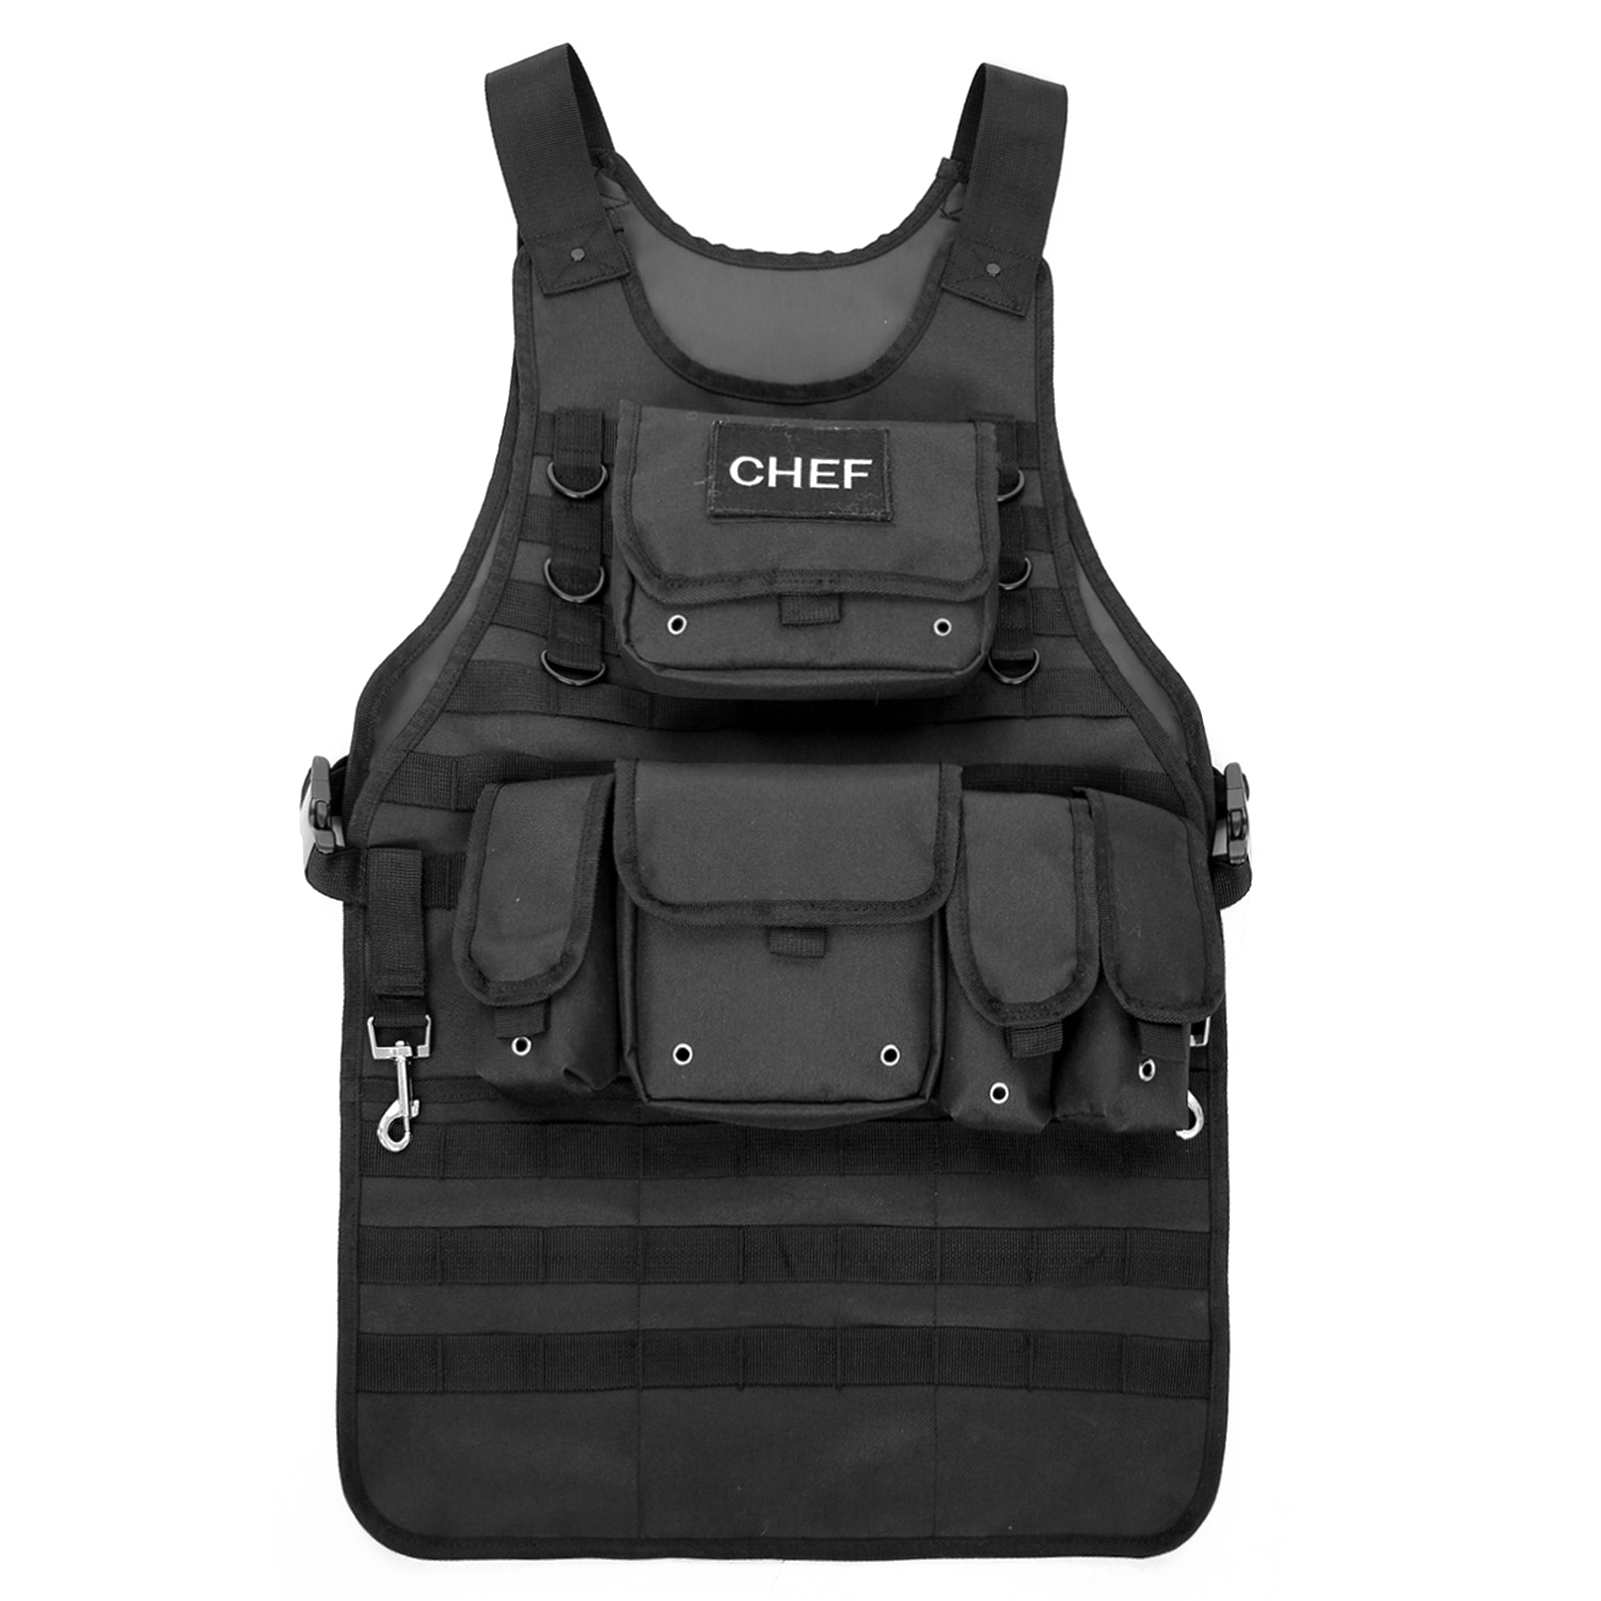 Áo giáp dạng vest CHEF với nhiều túi có thể tháo rời thuận tiện cho các hoạt động thực hành